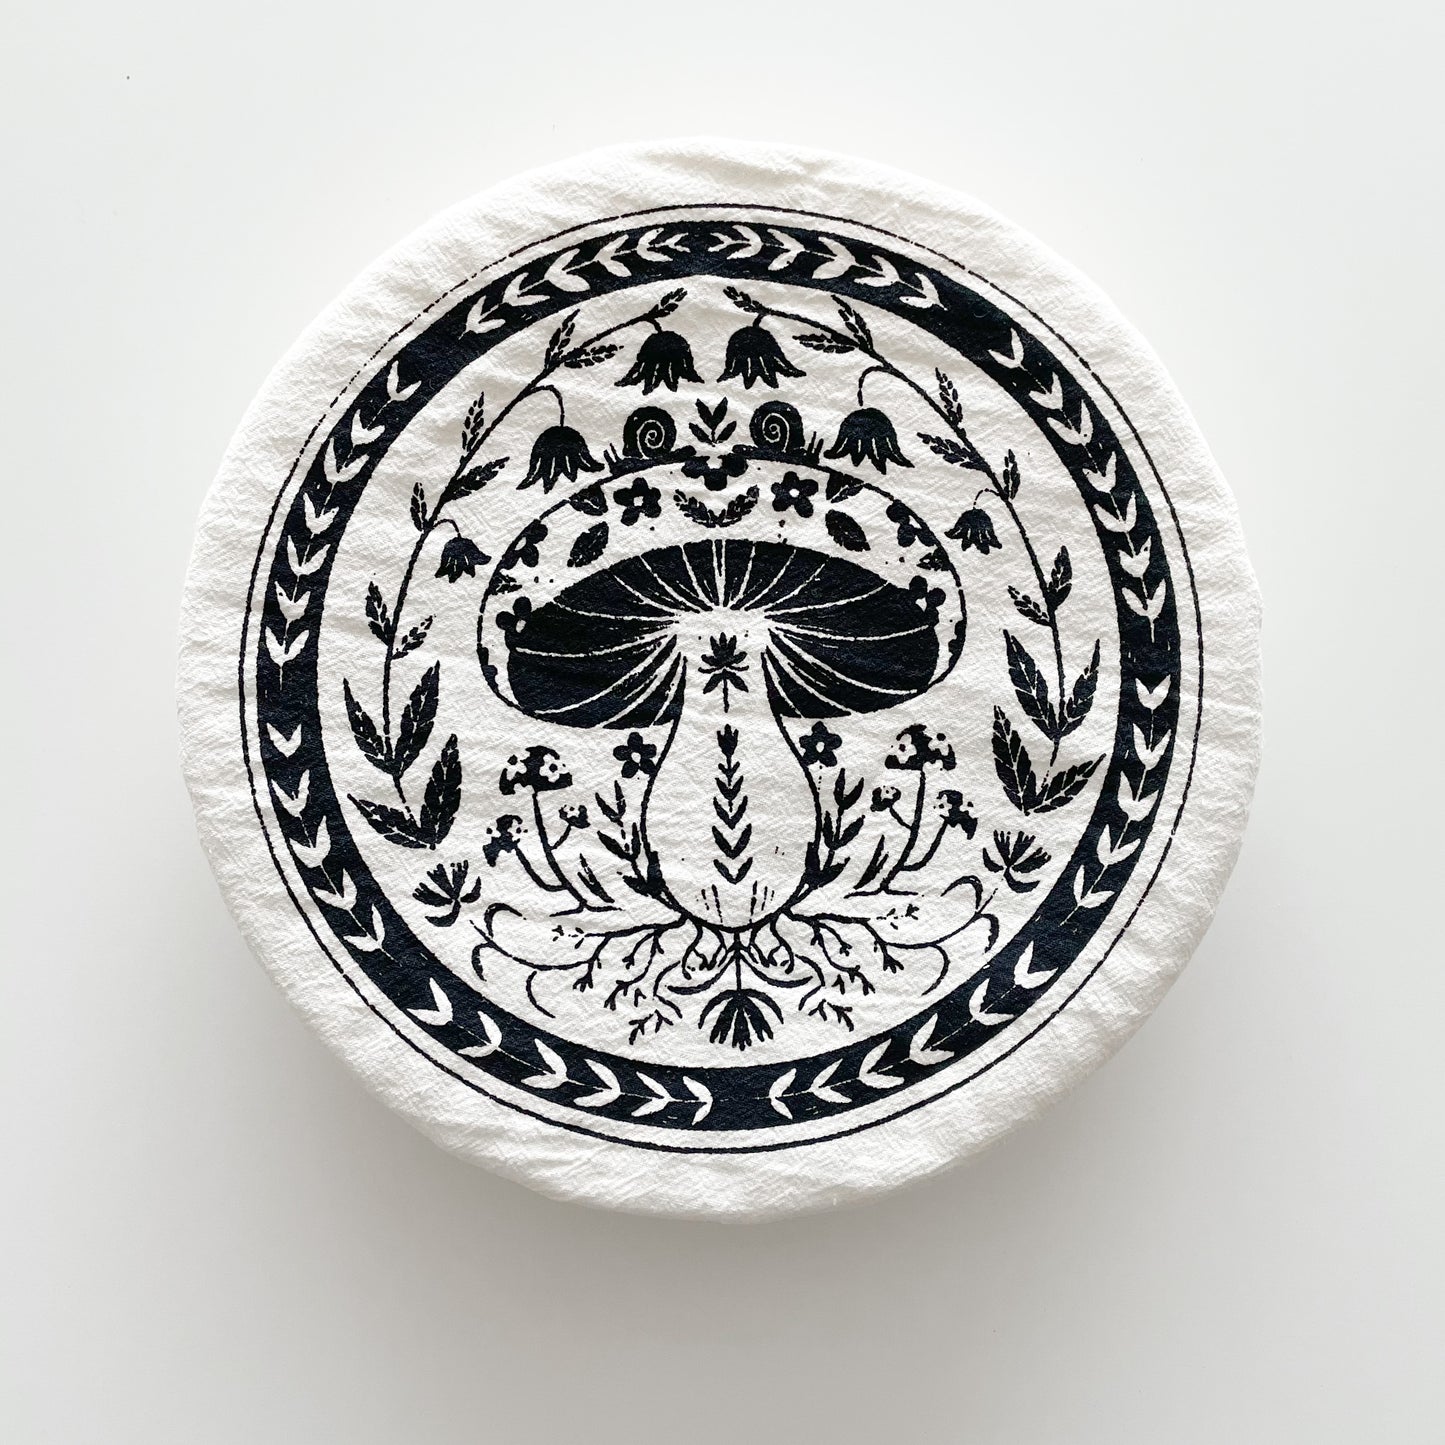 a bowl cover with a mushroom design